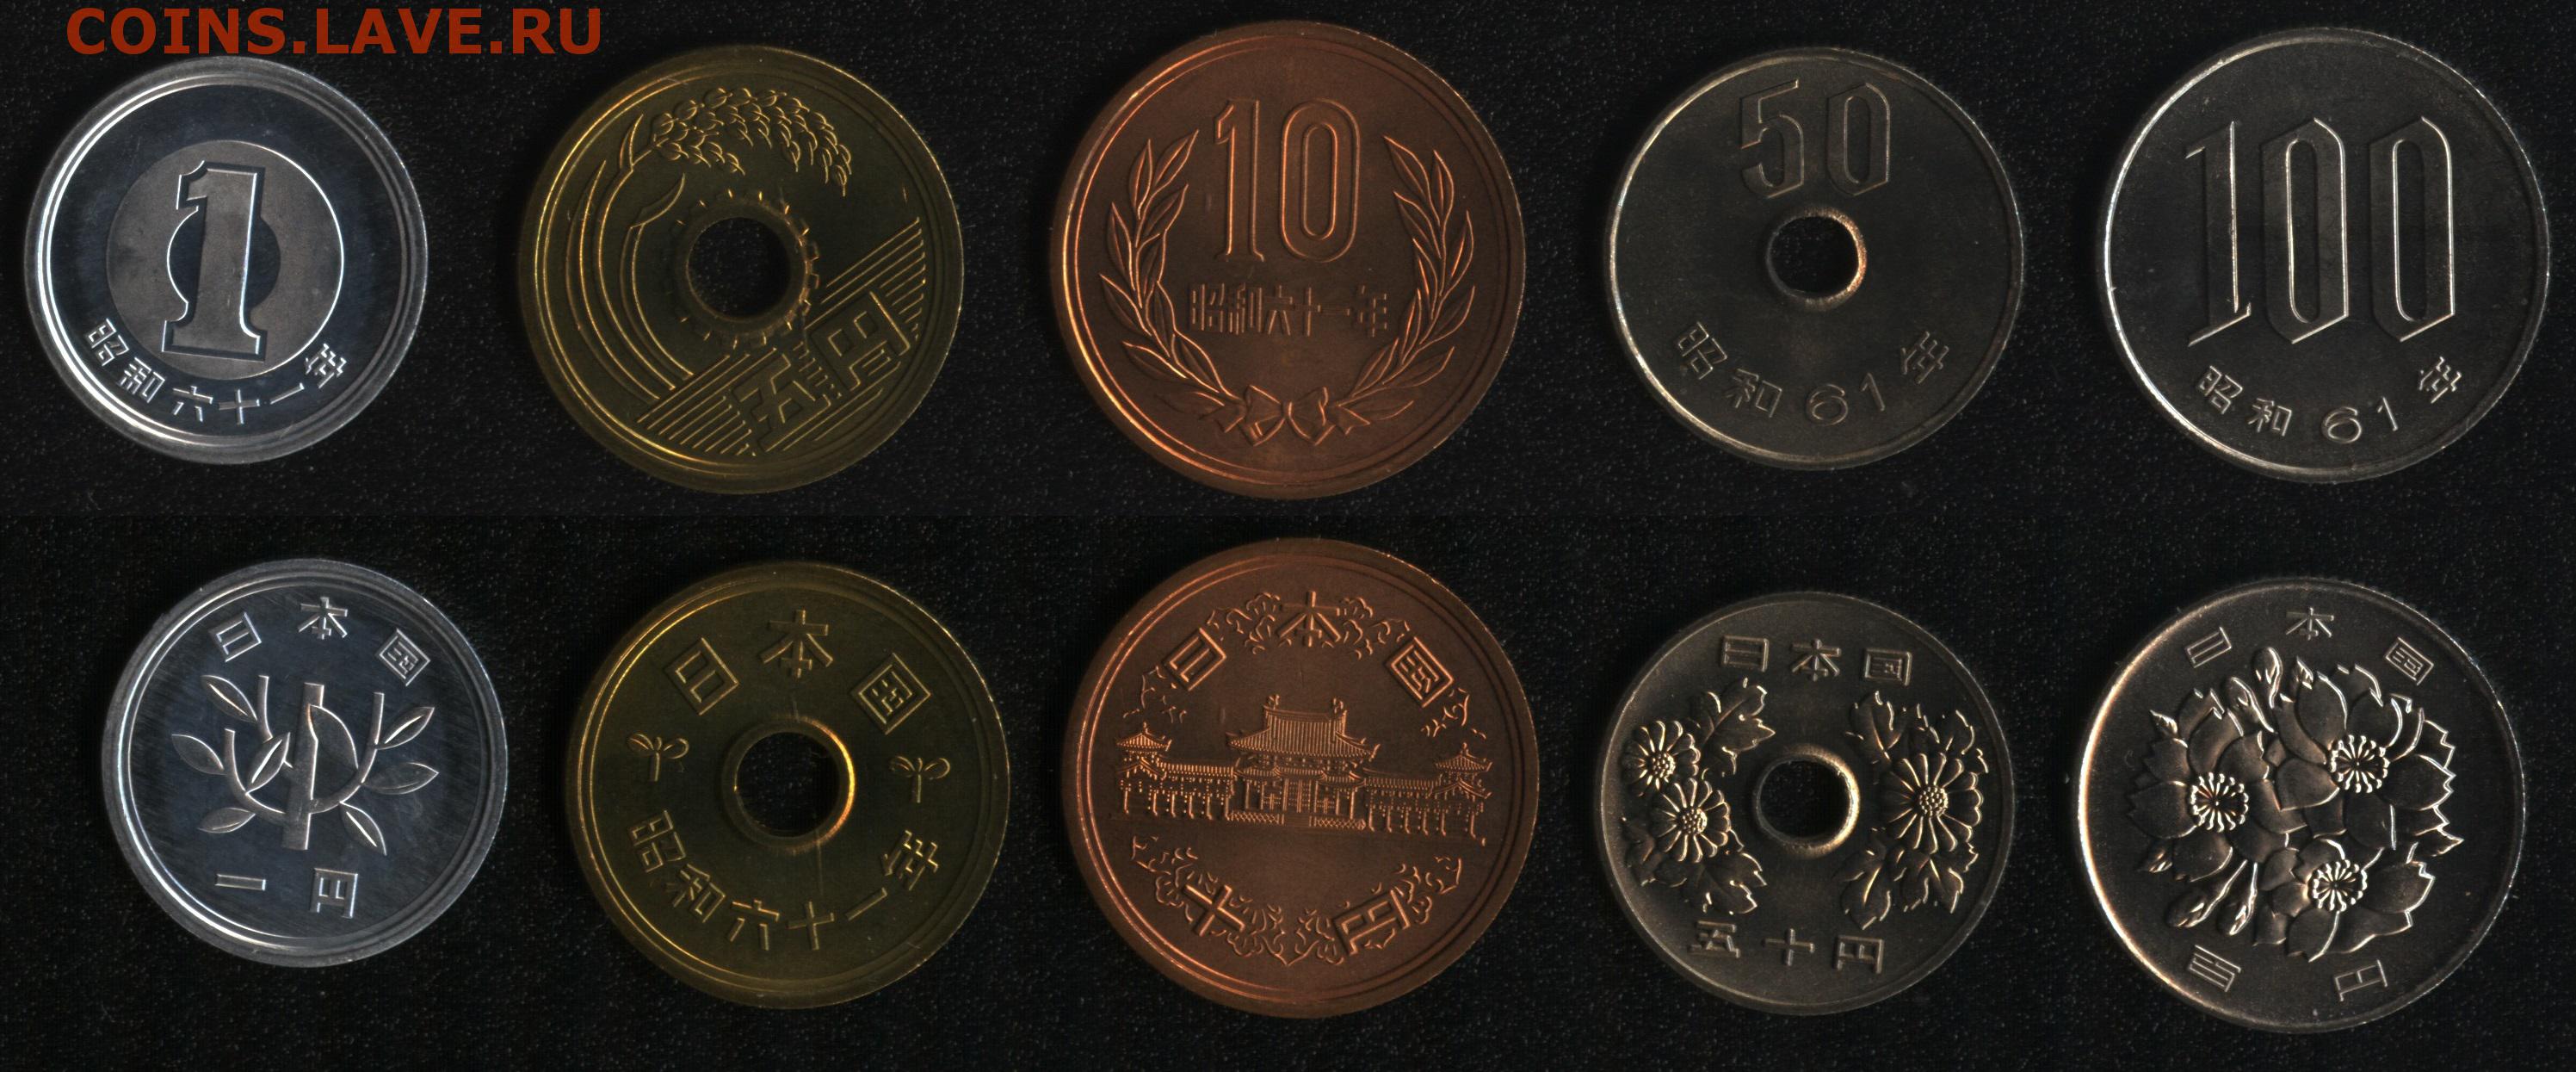 300 ен в рублях. Монета 100 с иероглифами. Монеты Японии 100 йен 22. Монета 1 с иероглифами арабскими 2008 года. Монеты Азии с иероглифами.